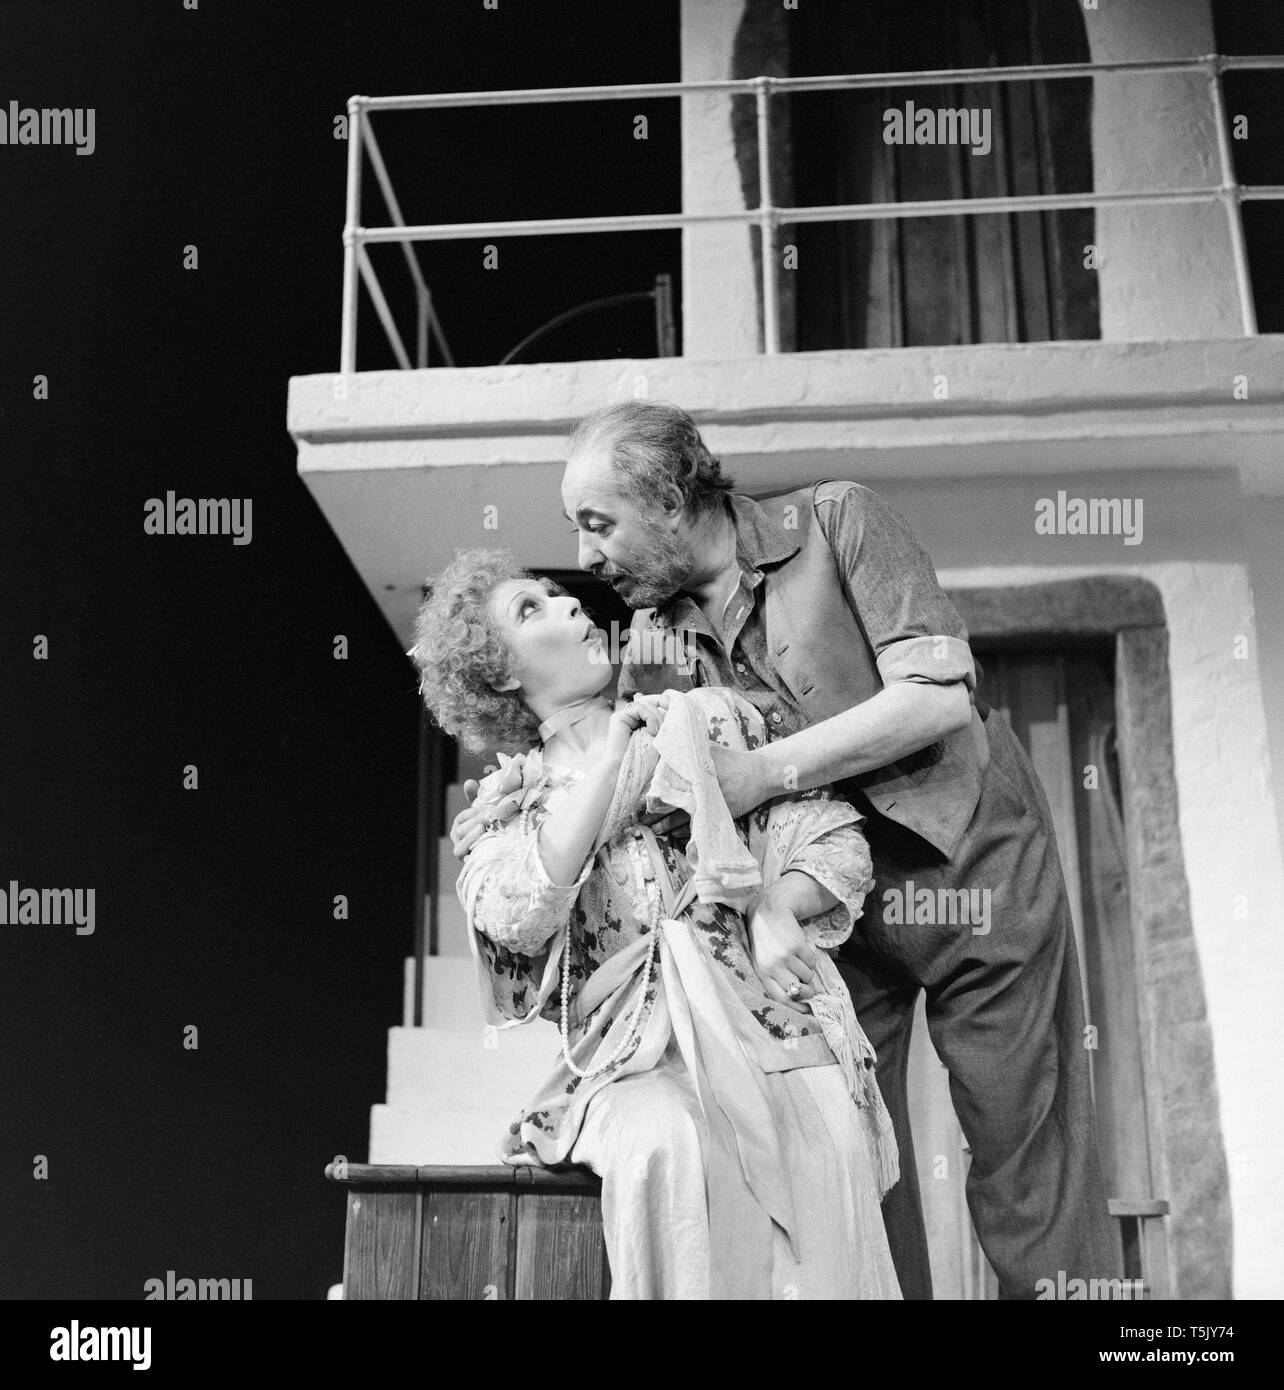 Englisch Schauspieler Alfred Marks, und englische Schauspielerin Miriam Karlin, auf der Bühne des Greenwich Theater in London, während der Proben für die play Zorba, im November 1973. dm spielte die Rolle von Zorba, Karlin die Rolle der Madame Hortense. Stockfoto